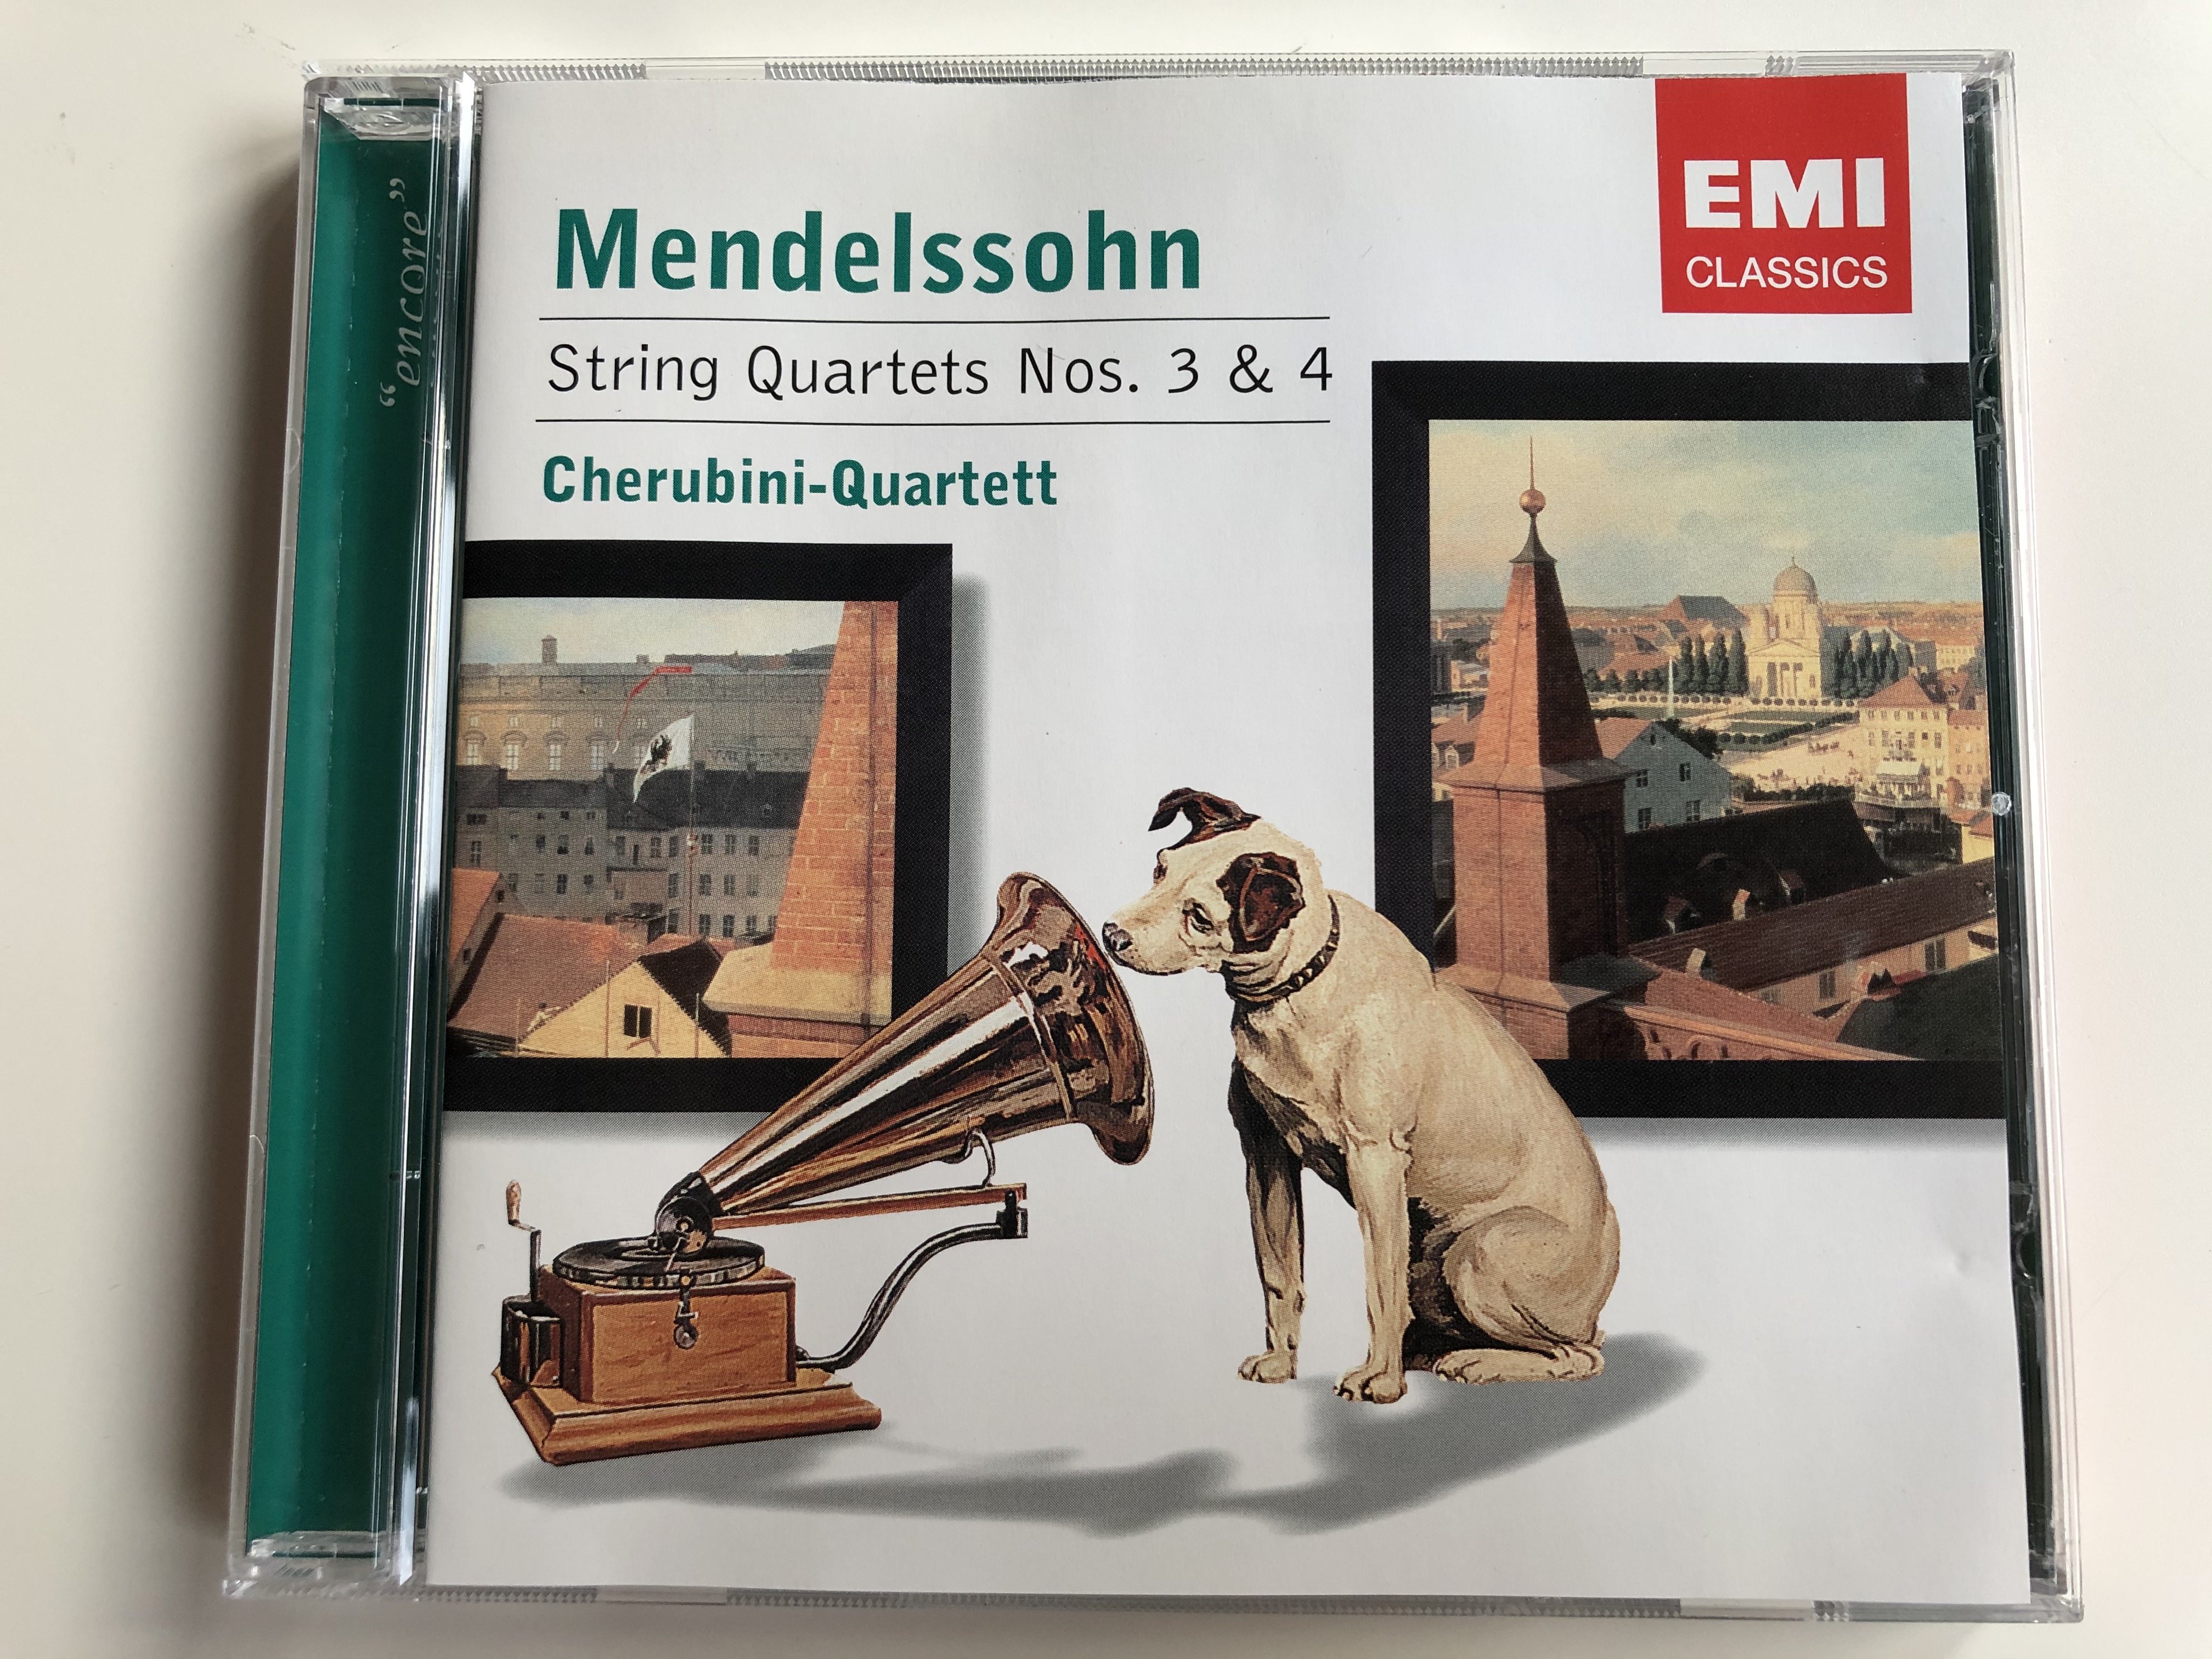 mendelssohn-string-quartets-nos.-3-4-cherubini-quartett-emi-classics-audio-cd-2004-stereo-7243-5-85803-2-7-1-.jpg